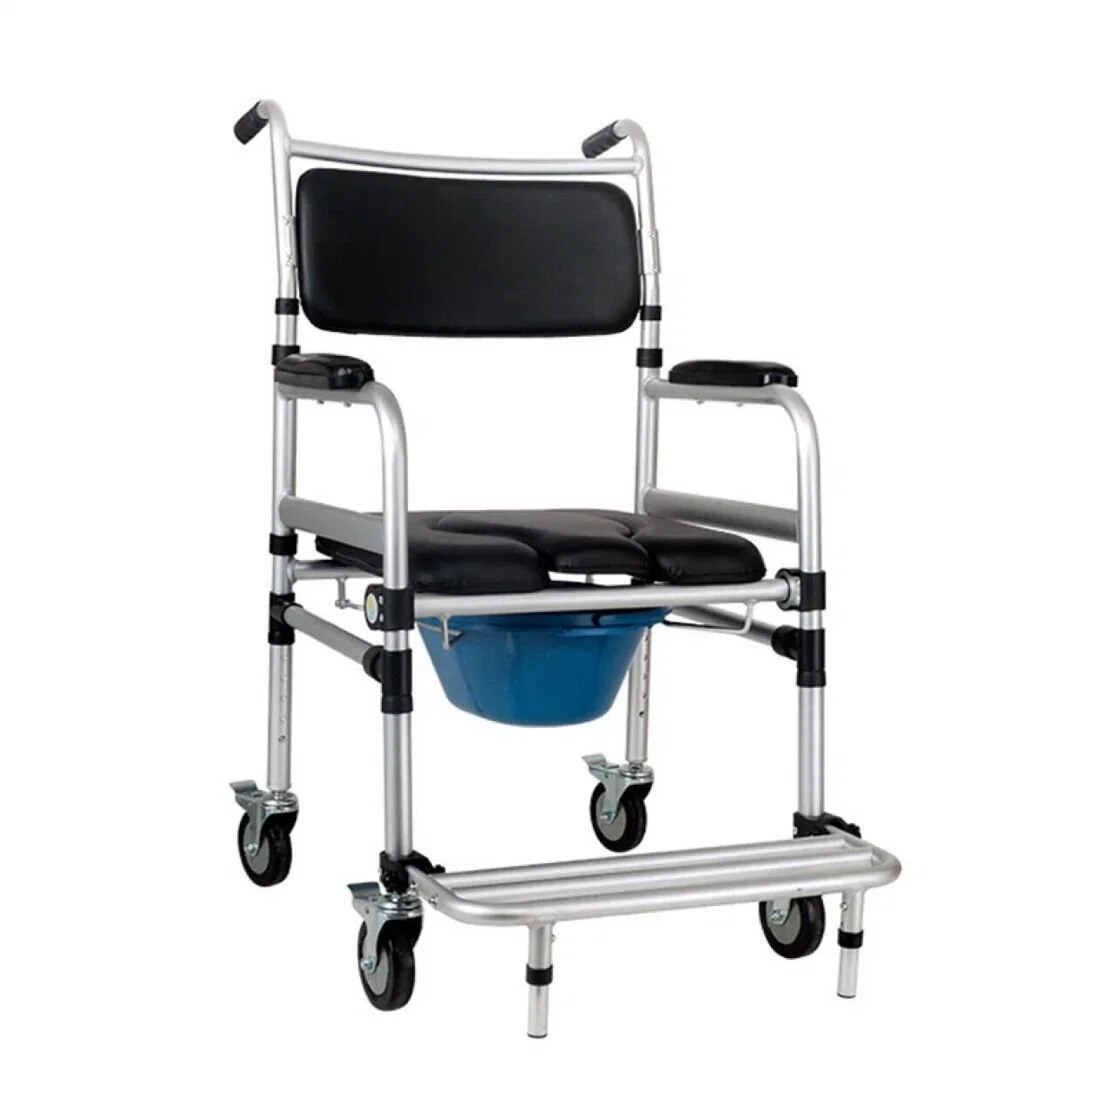 Nouveau Style commode fauteuil de transfert en fauteuil roulant commode commode en fauteuil roulant pliant portatif de fauteuils roulants douche